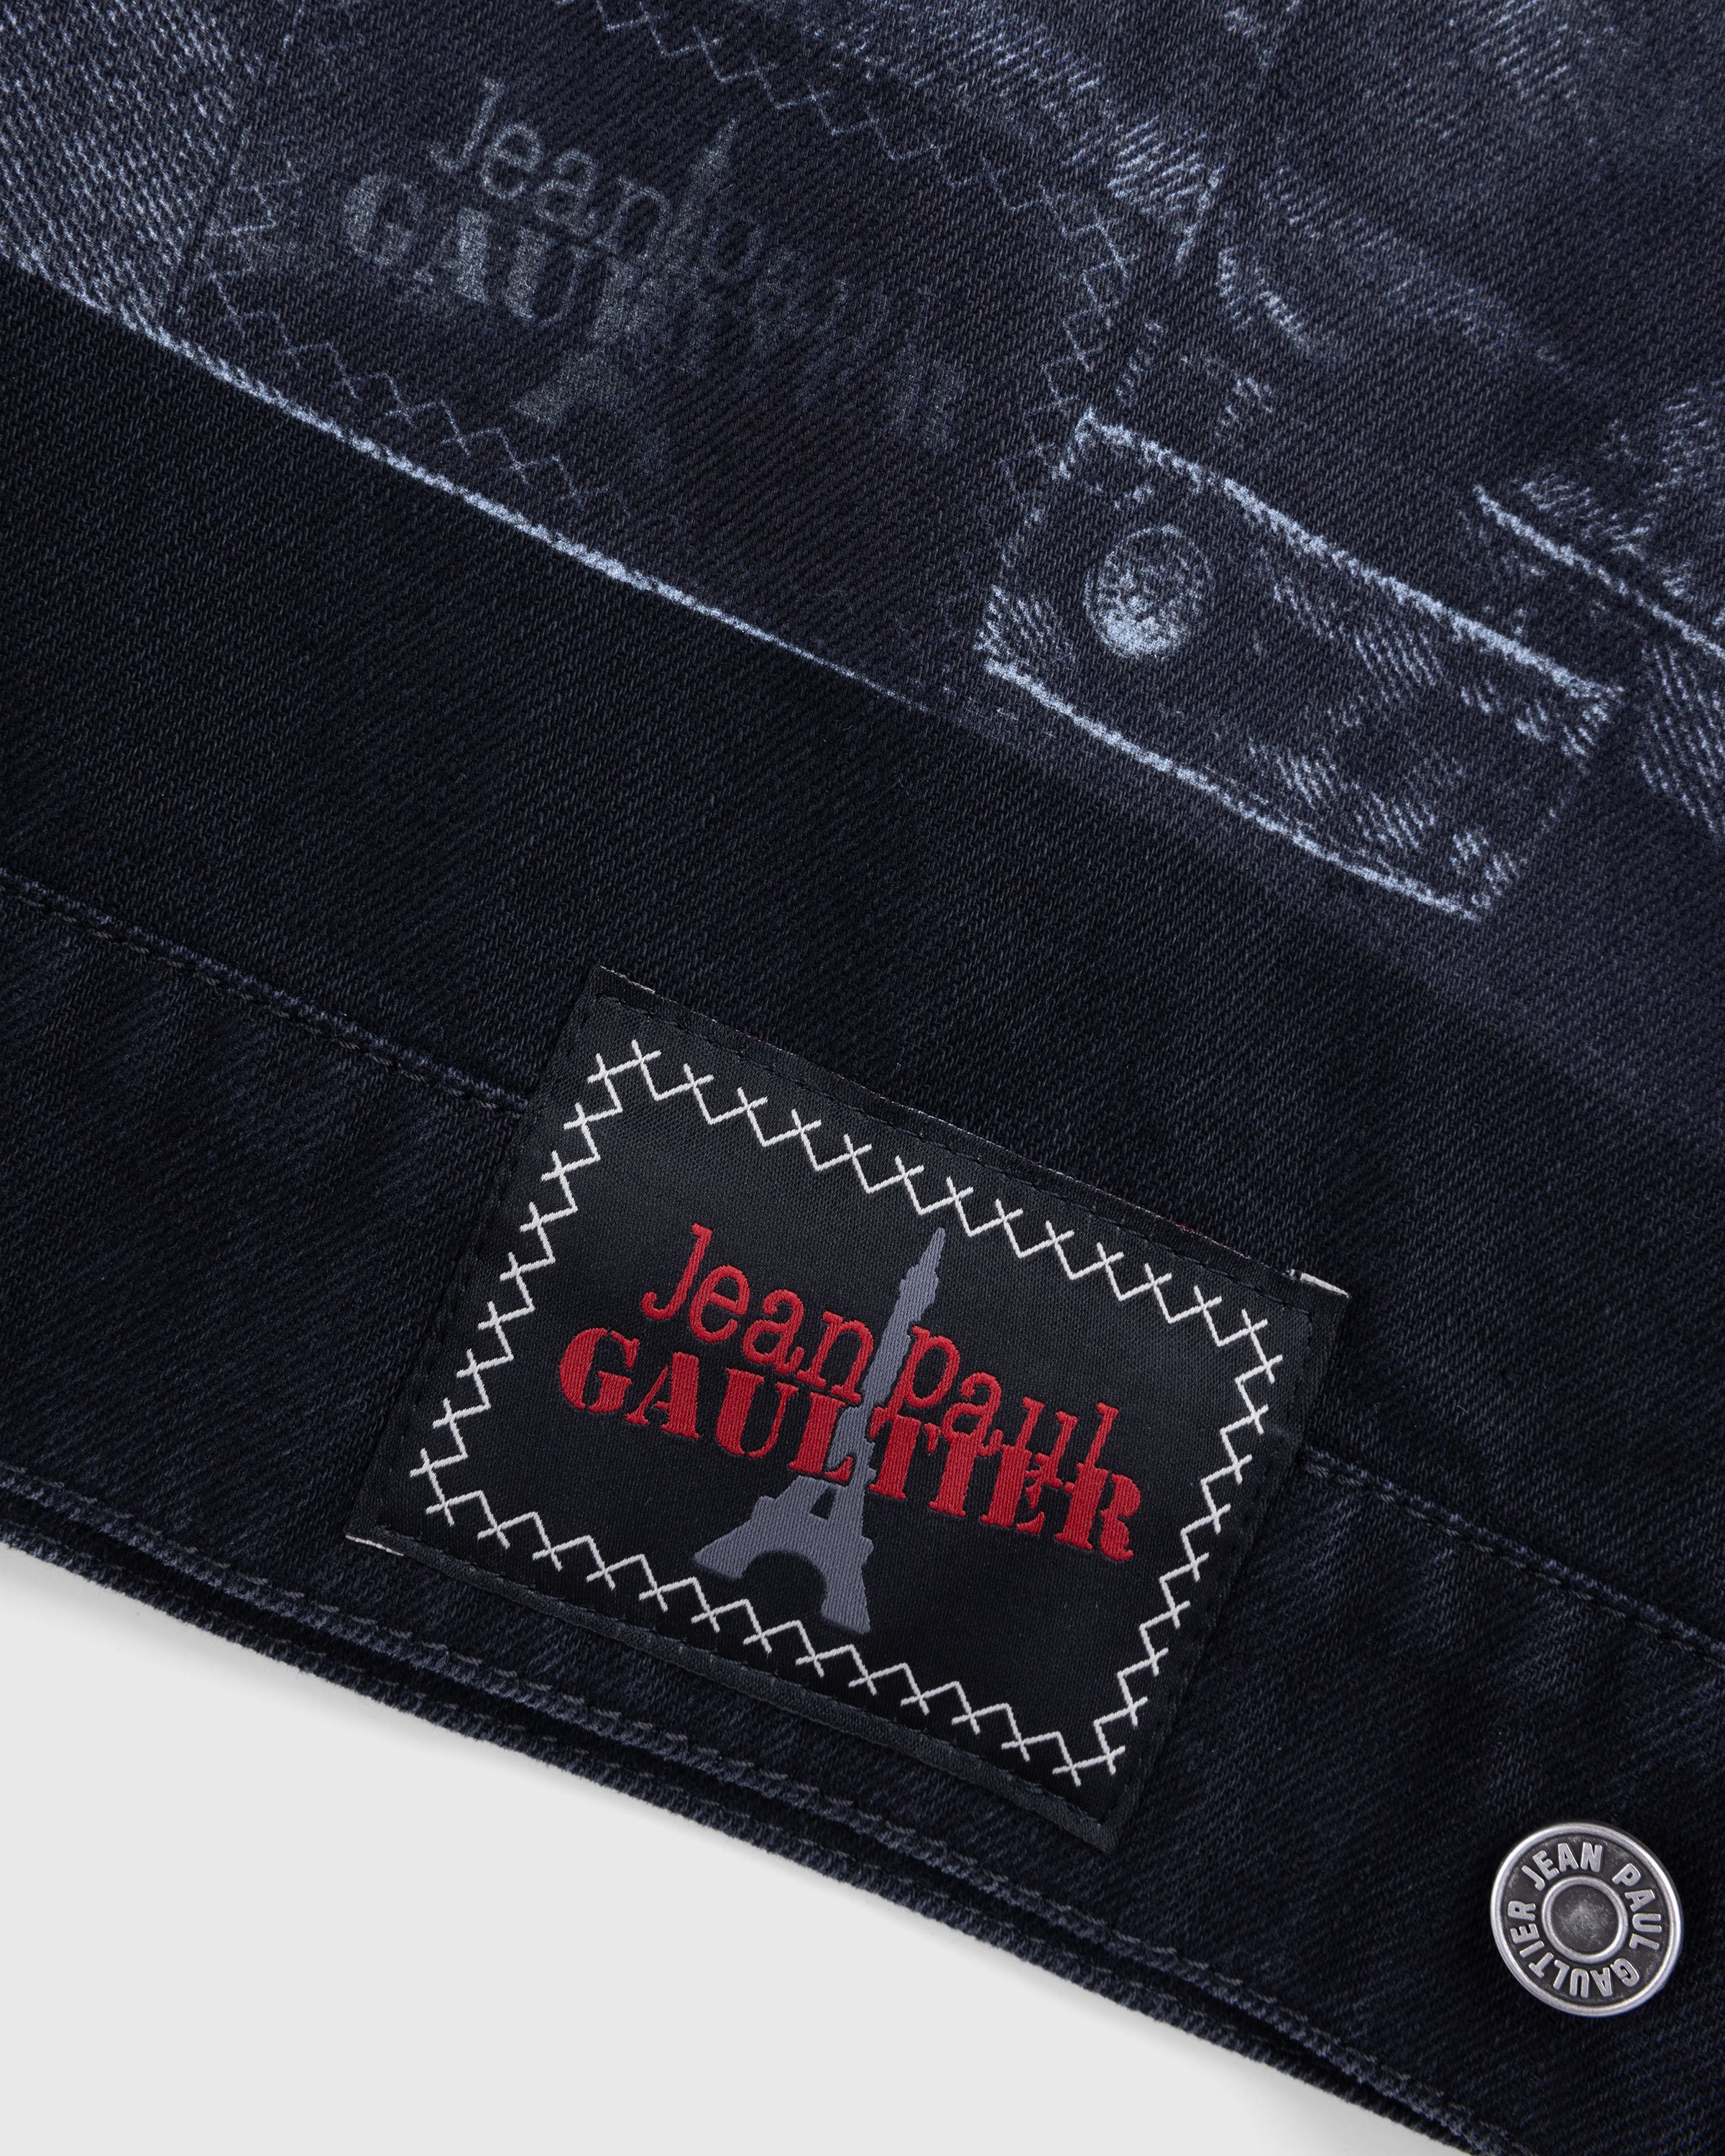 Jean Paul Gaultier - Trompe L'œil Denim Jacket Black - Clothing - Black - Image 6